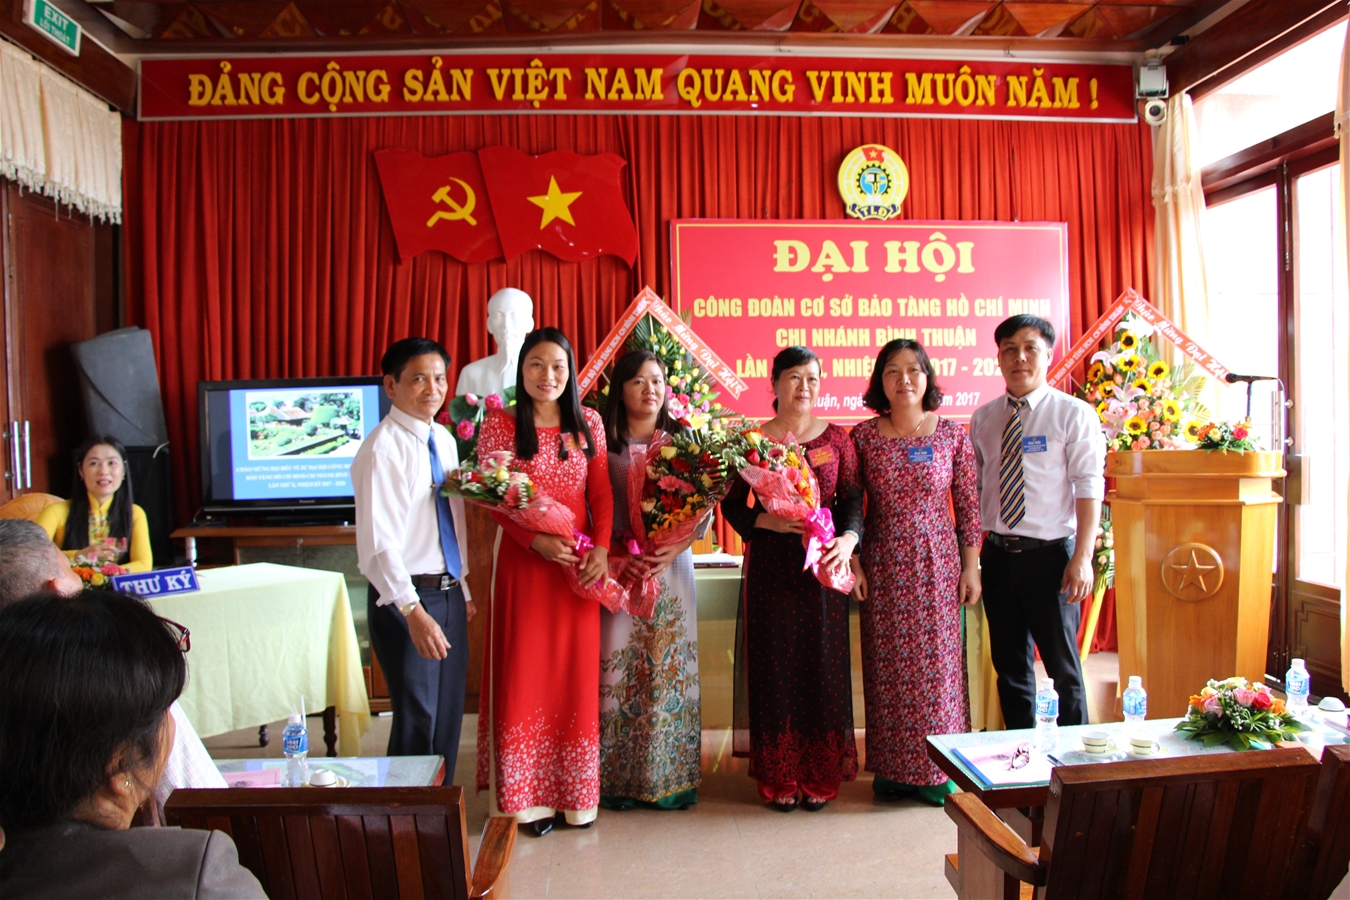 CĐCS Bảo tàng Hồ Chí Minh – CNBT phối hợp tổ chức phục vụ tốt công tác tham quan, viếng Bác